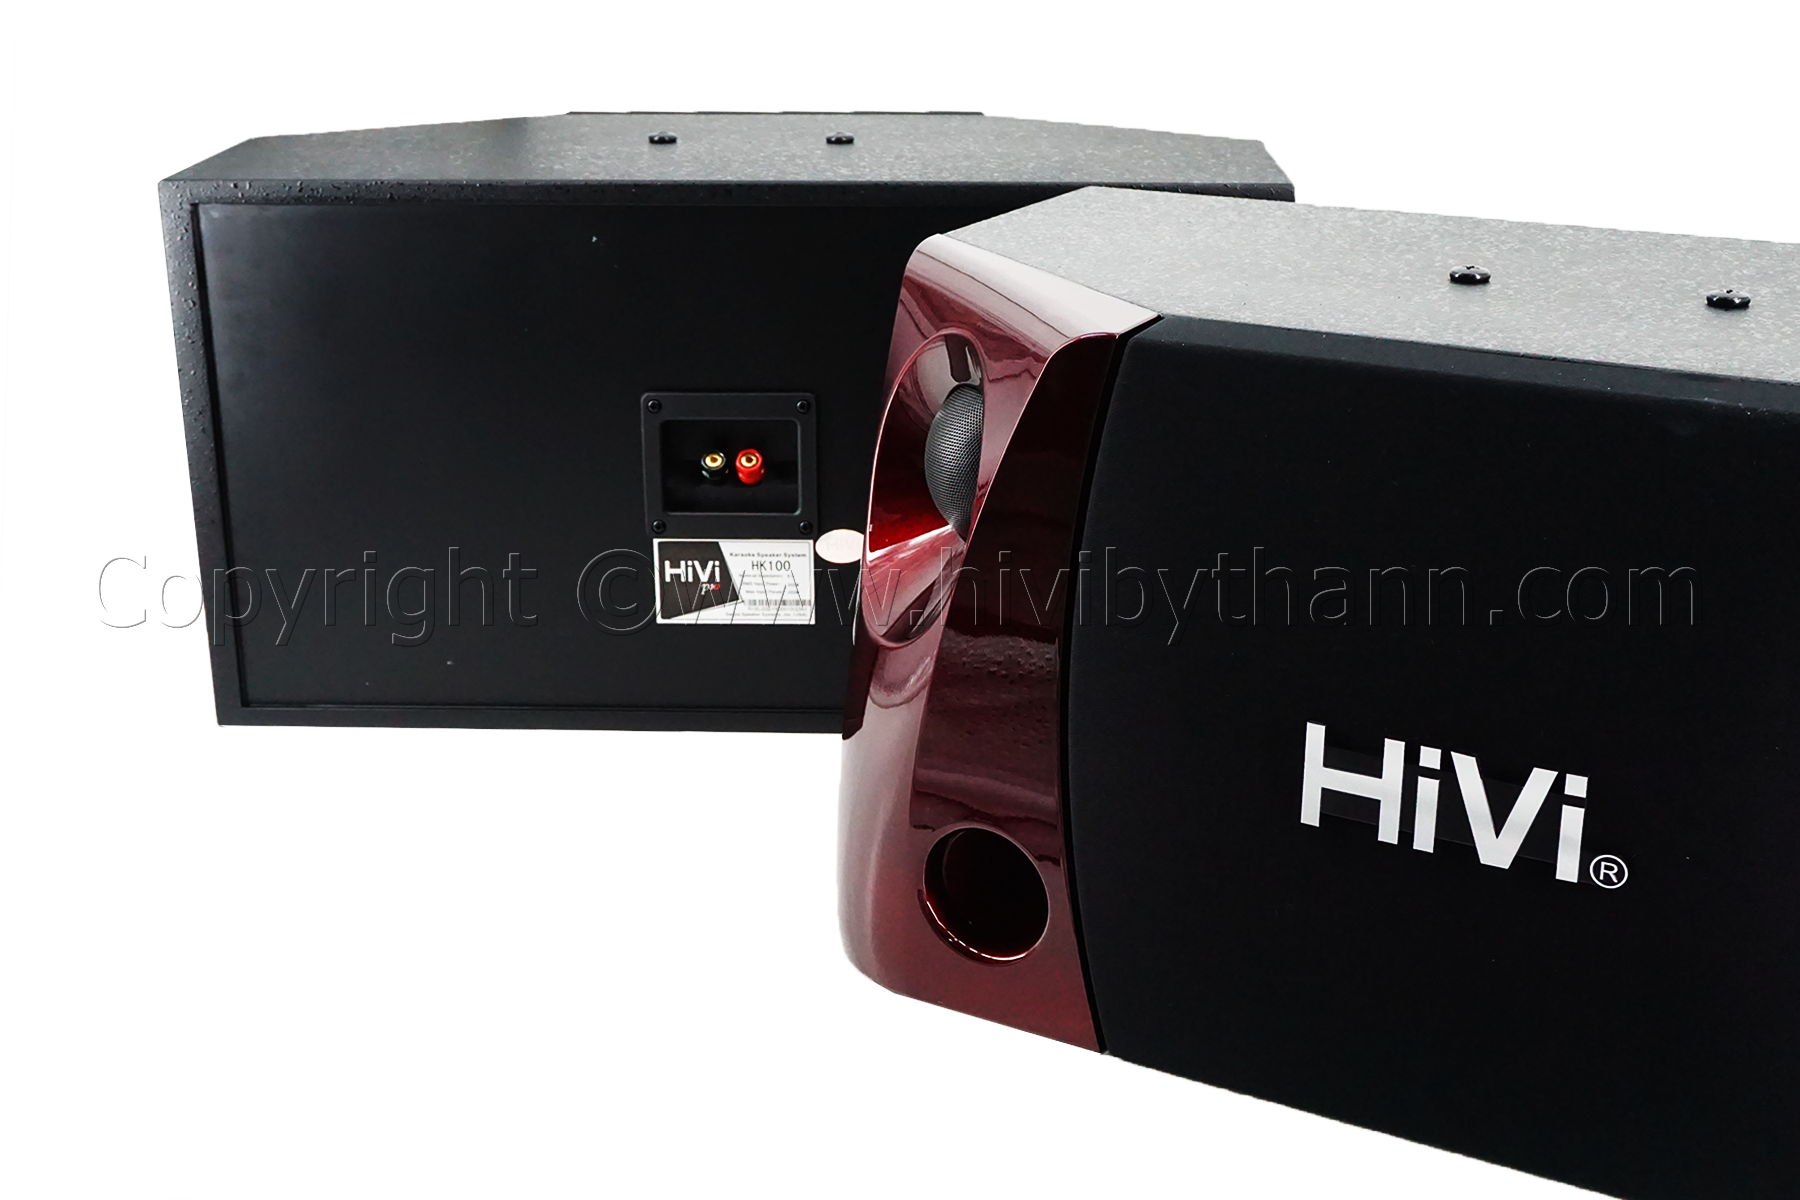 HiVi_HK100_Product_6